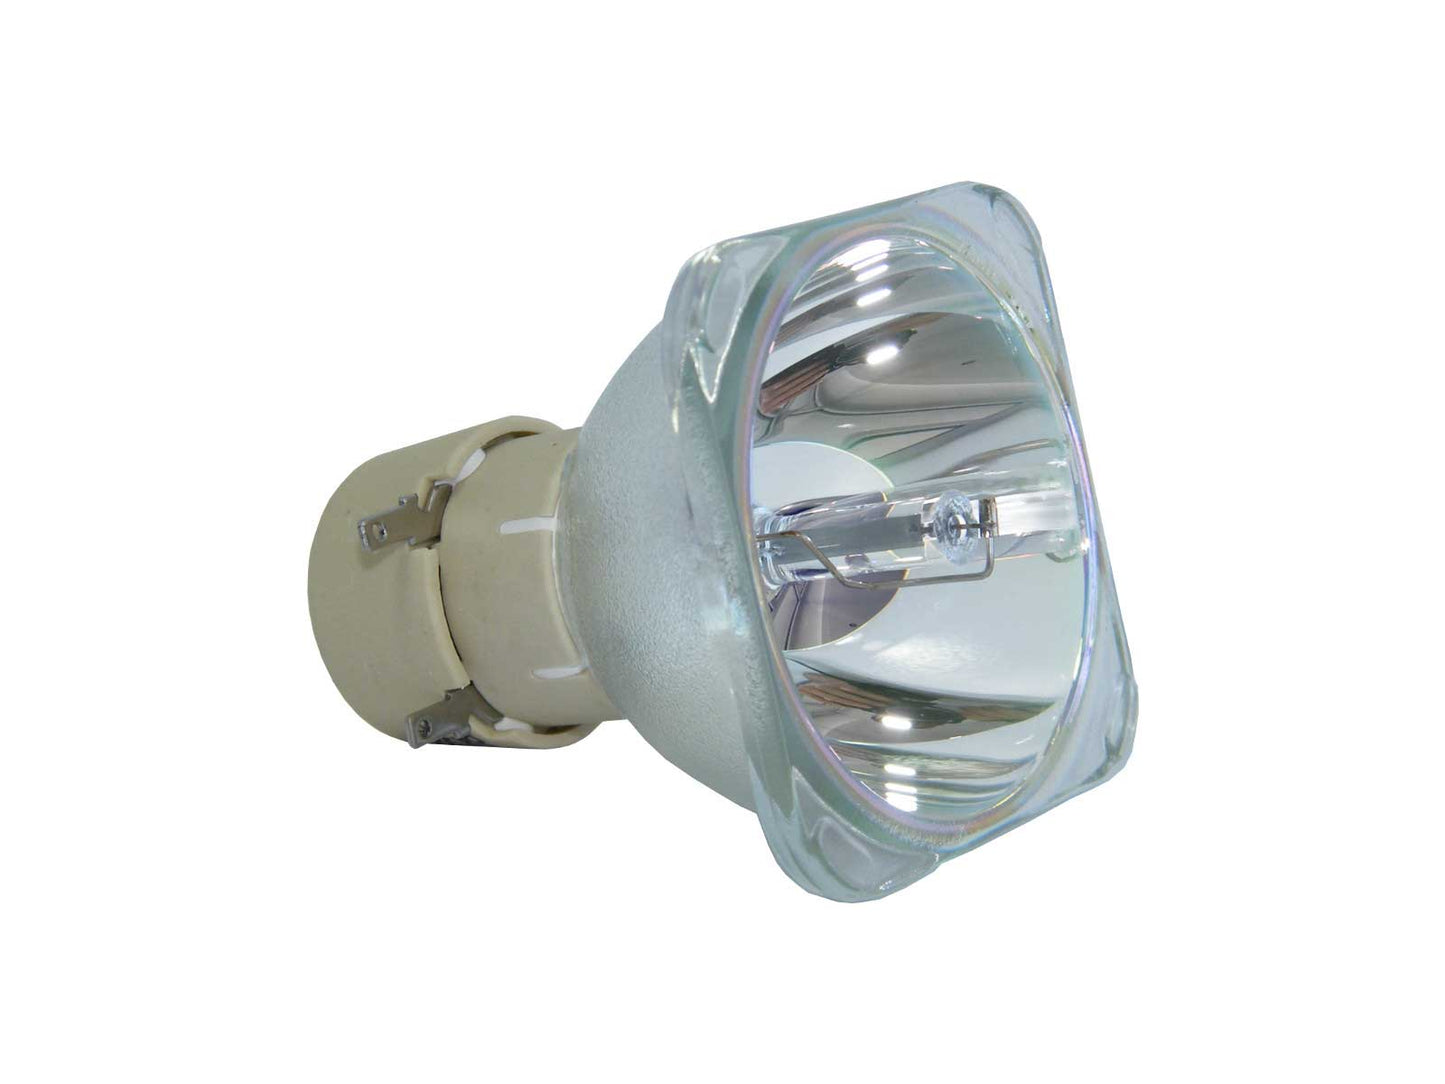 azurano Beamerlampe für NEC NP13LP, 60002853 Ersatzlampe Projektorlampe - Bild 1